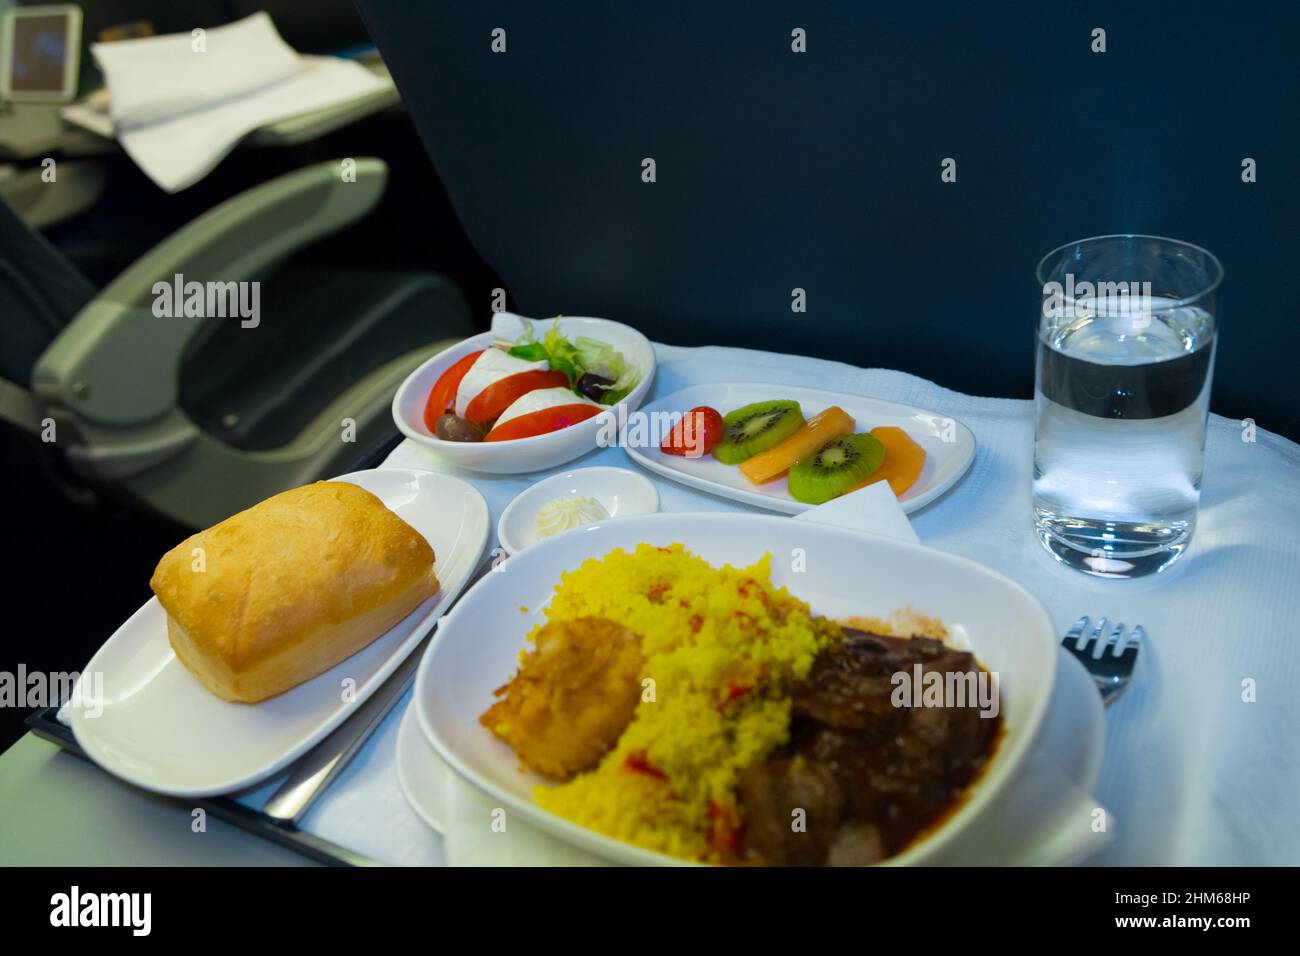 La comida servida a bordo del avión en clase business en la mesa. Bandeja de comida en el avión. Bandeja de comida en el avión, los viajes en primera clase. Comida preparada en el avión Foto de stock